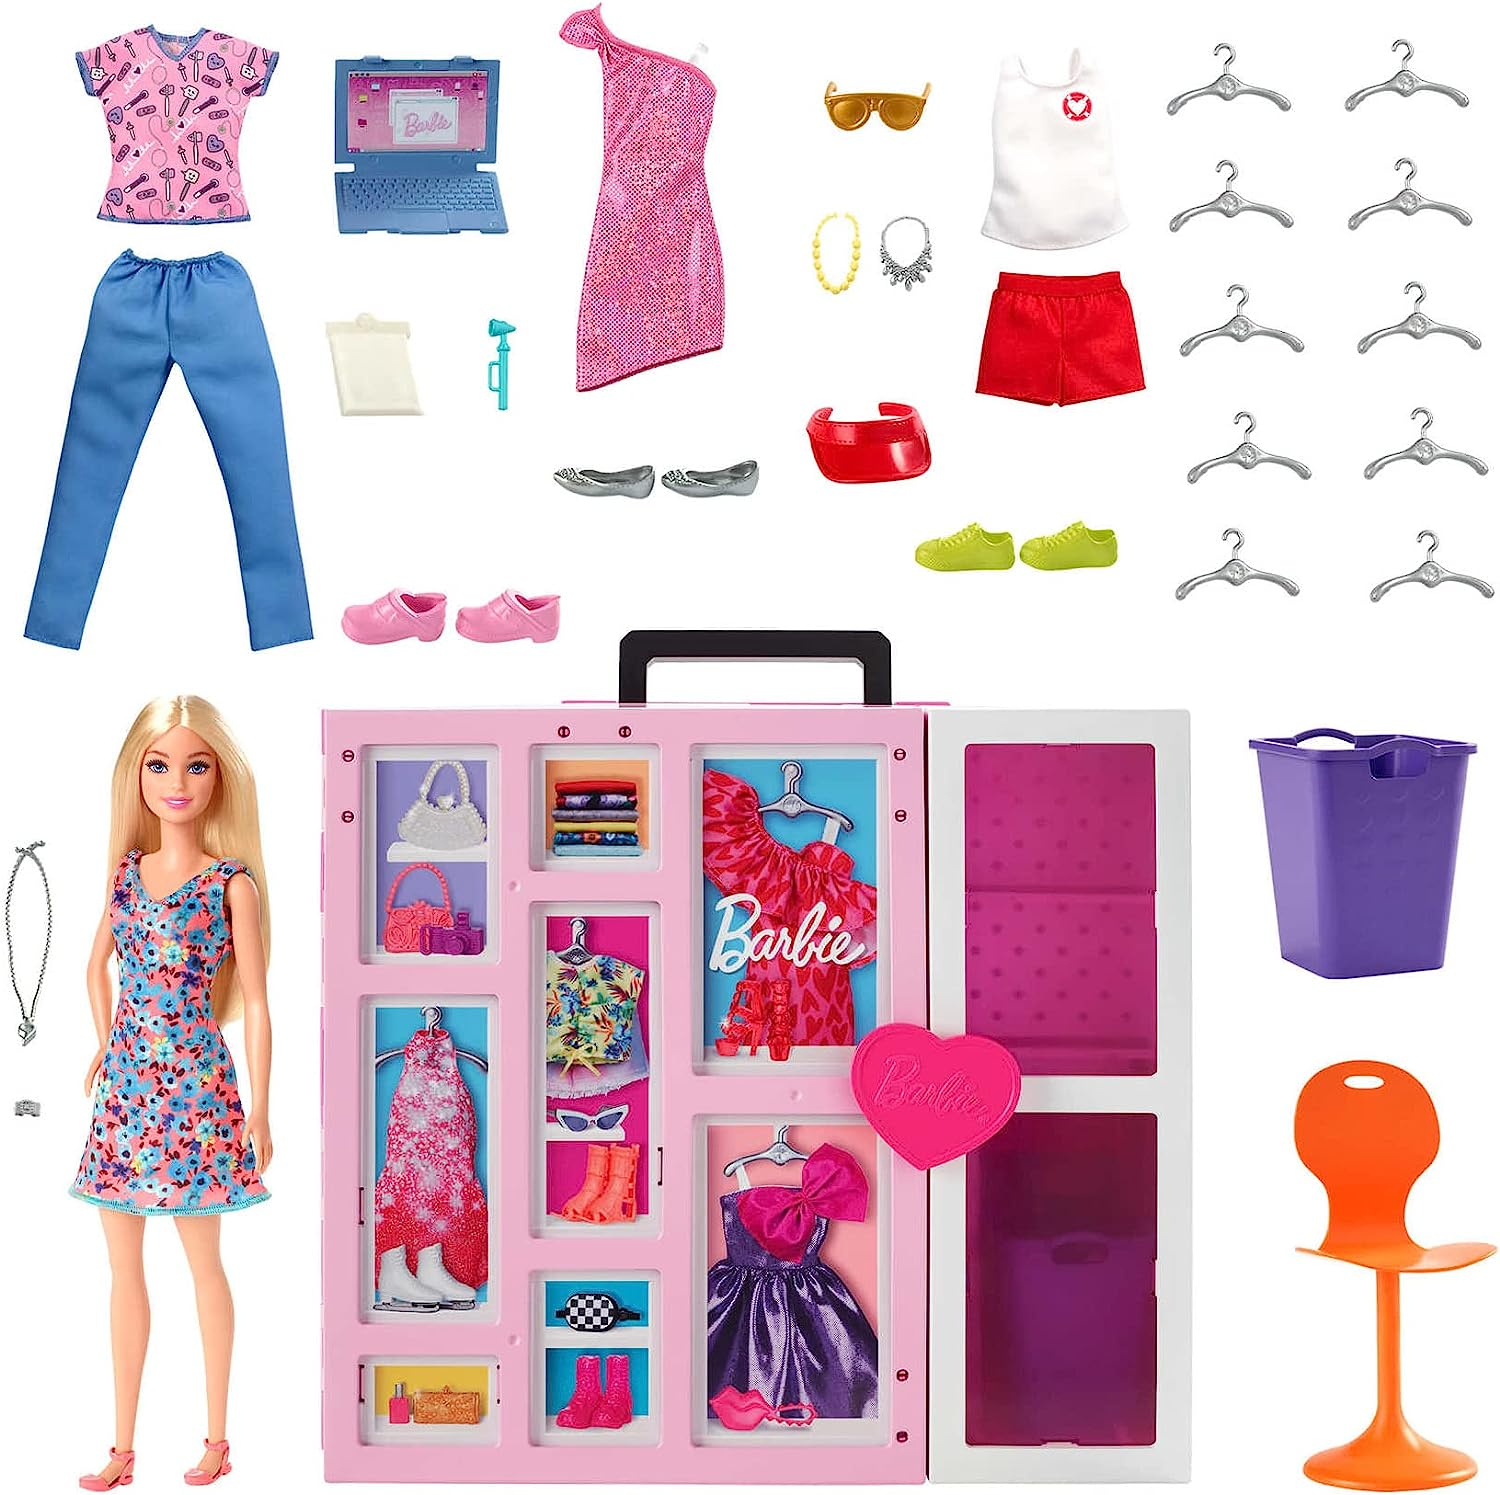 Roupa para boneca Barbie conjunto short e blusa